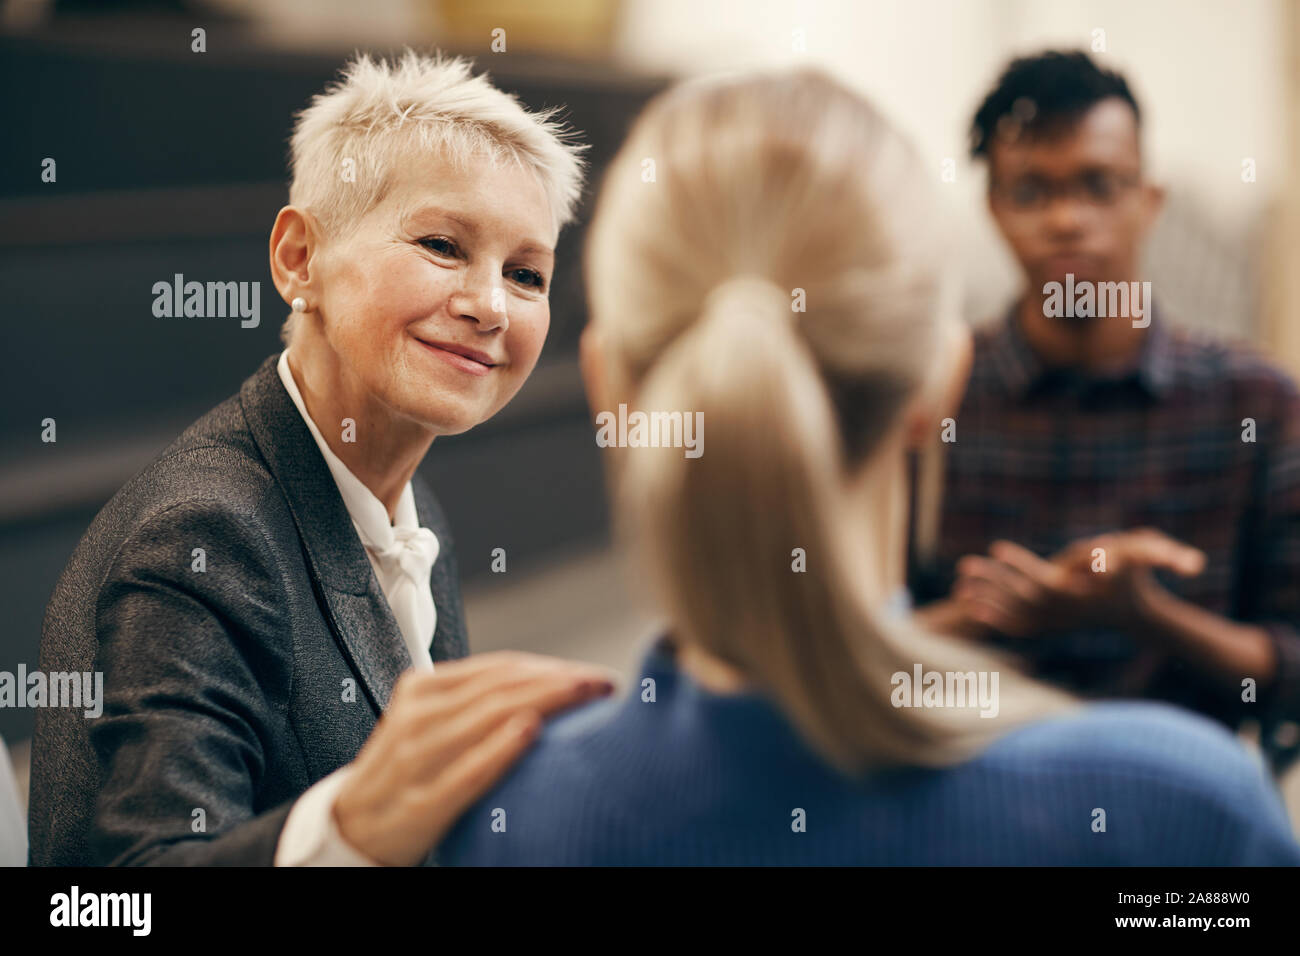 Femme mature avec de courts cheveux blonds à parler aux jeunes pendant la formation leçon Banque D'Images